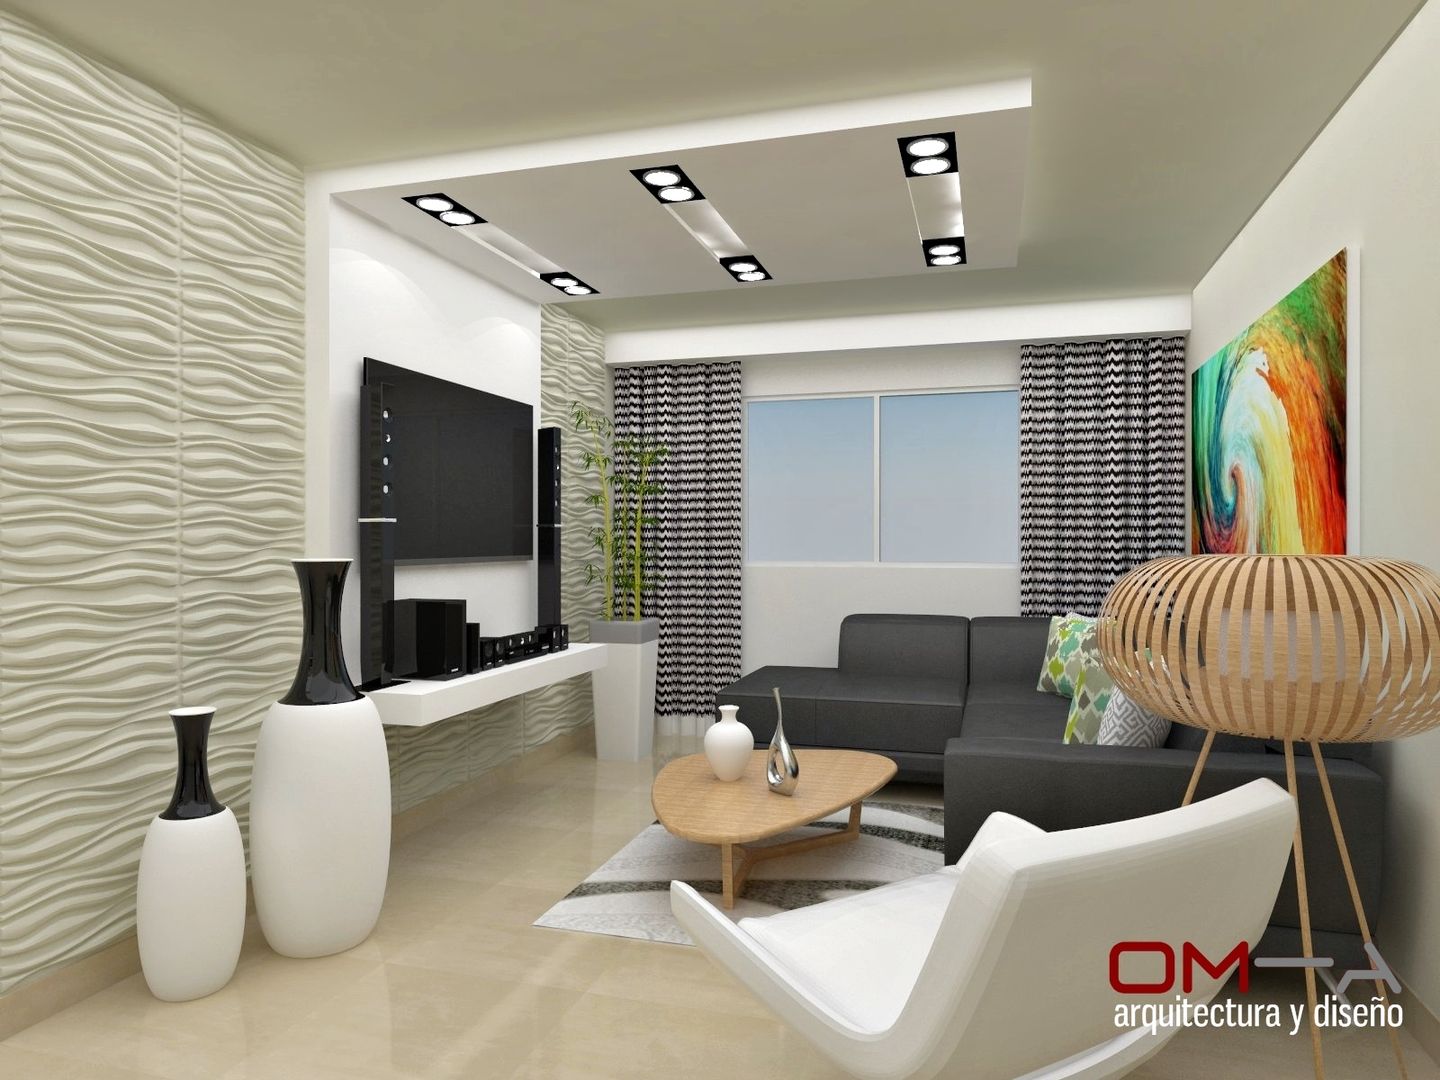 Diseño interior en apartamento , om-a arquitectura y diseño om-a arquitectura y diseño Modern living room